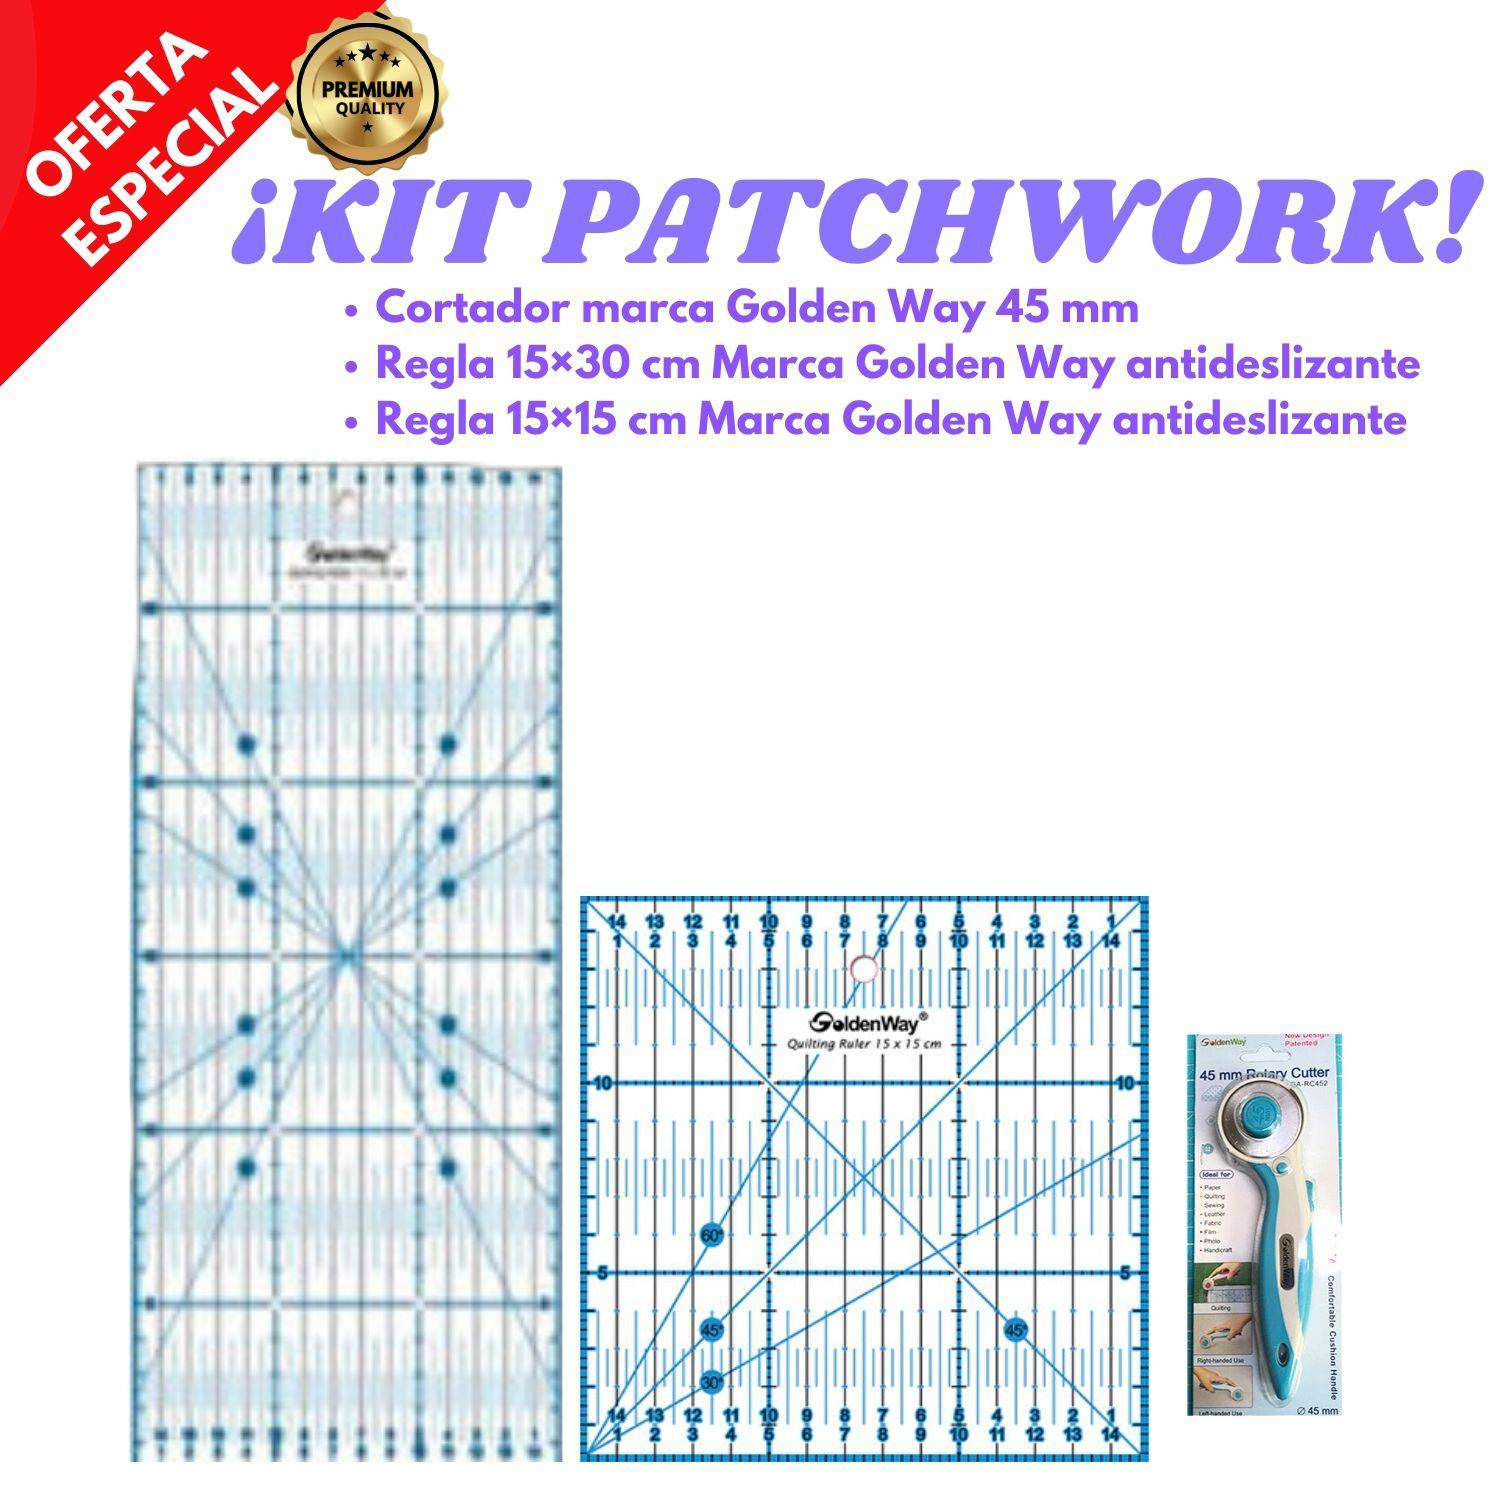 GENERICO Kit Patchwork Set reglas antideslizante en cm cortador Golden Way